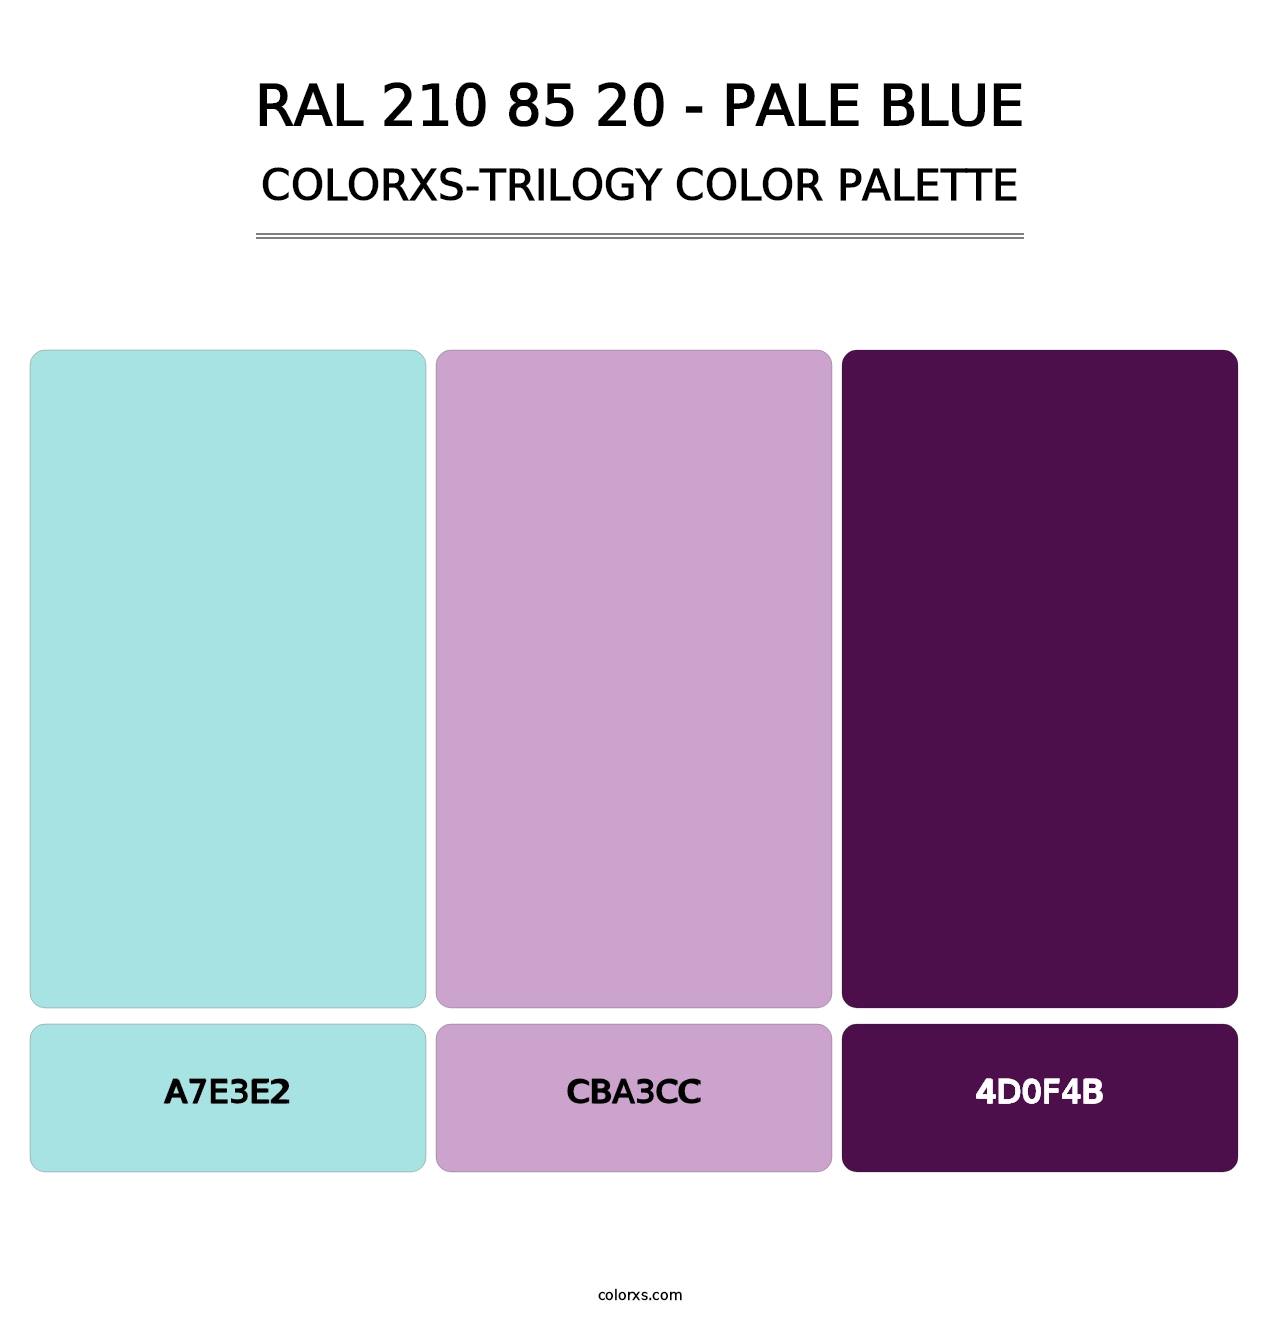 RAL 210 85 20 - Pale Blue - Colorxs Trilogy Palette